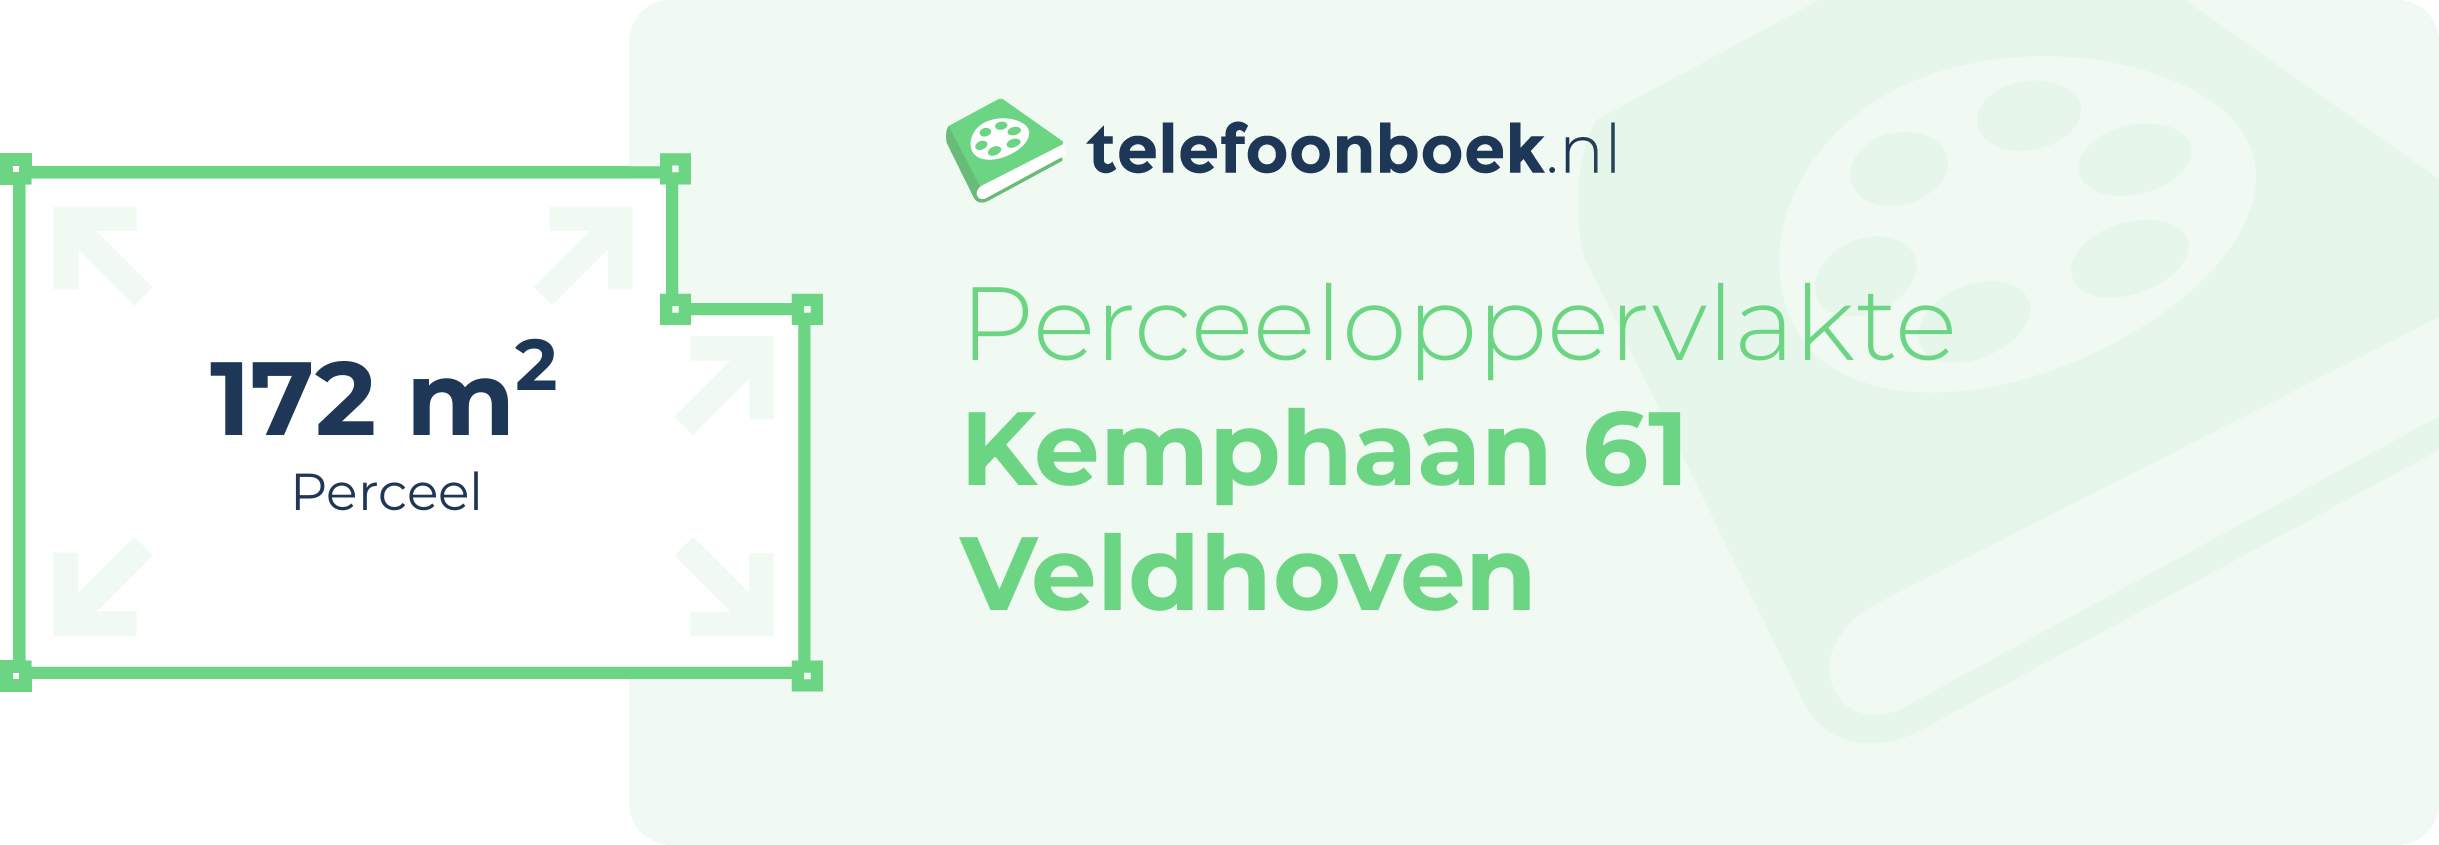 Perceeloppervlakte Kemphaan 61 Veldhoven